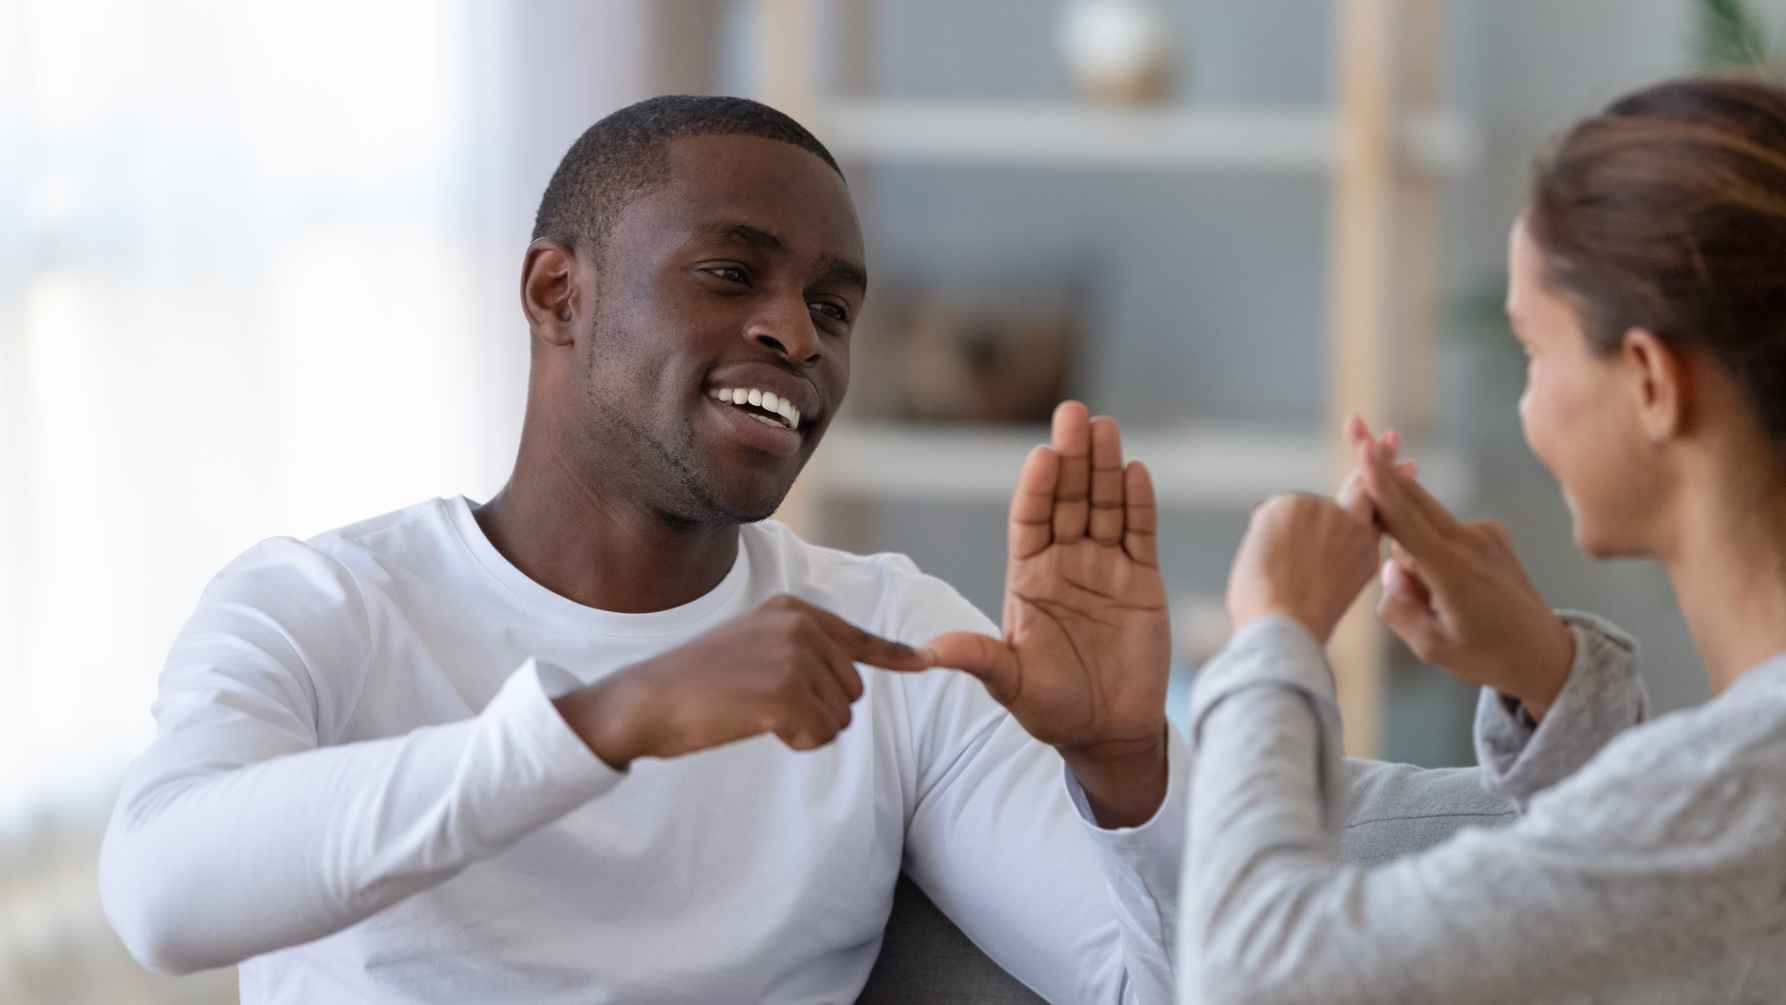 Twee studenten voeren een gesprek via gebarentaal